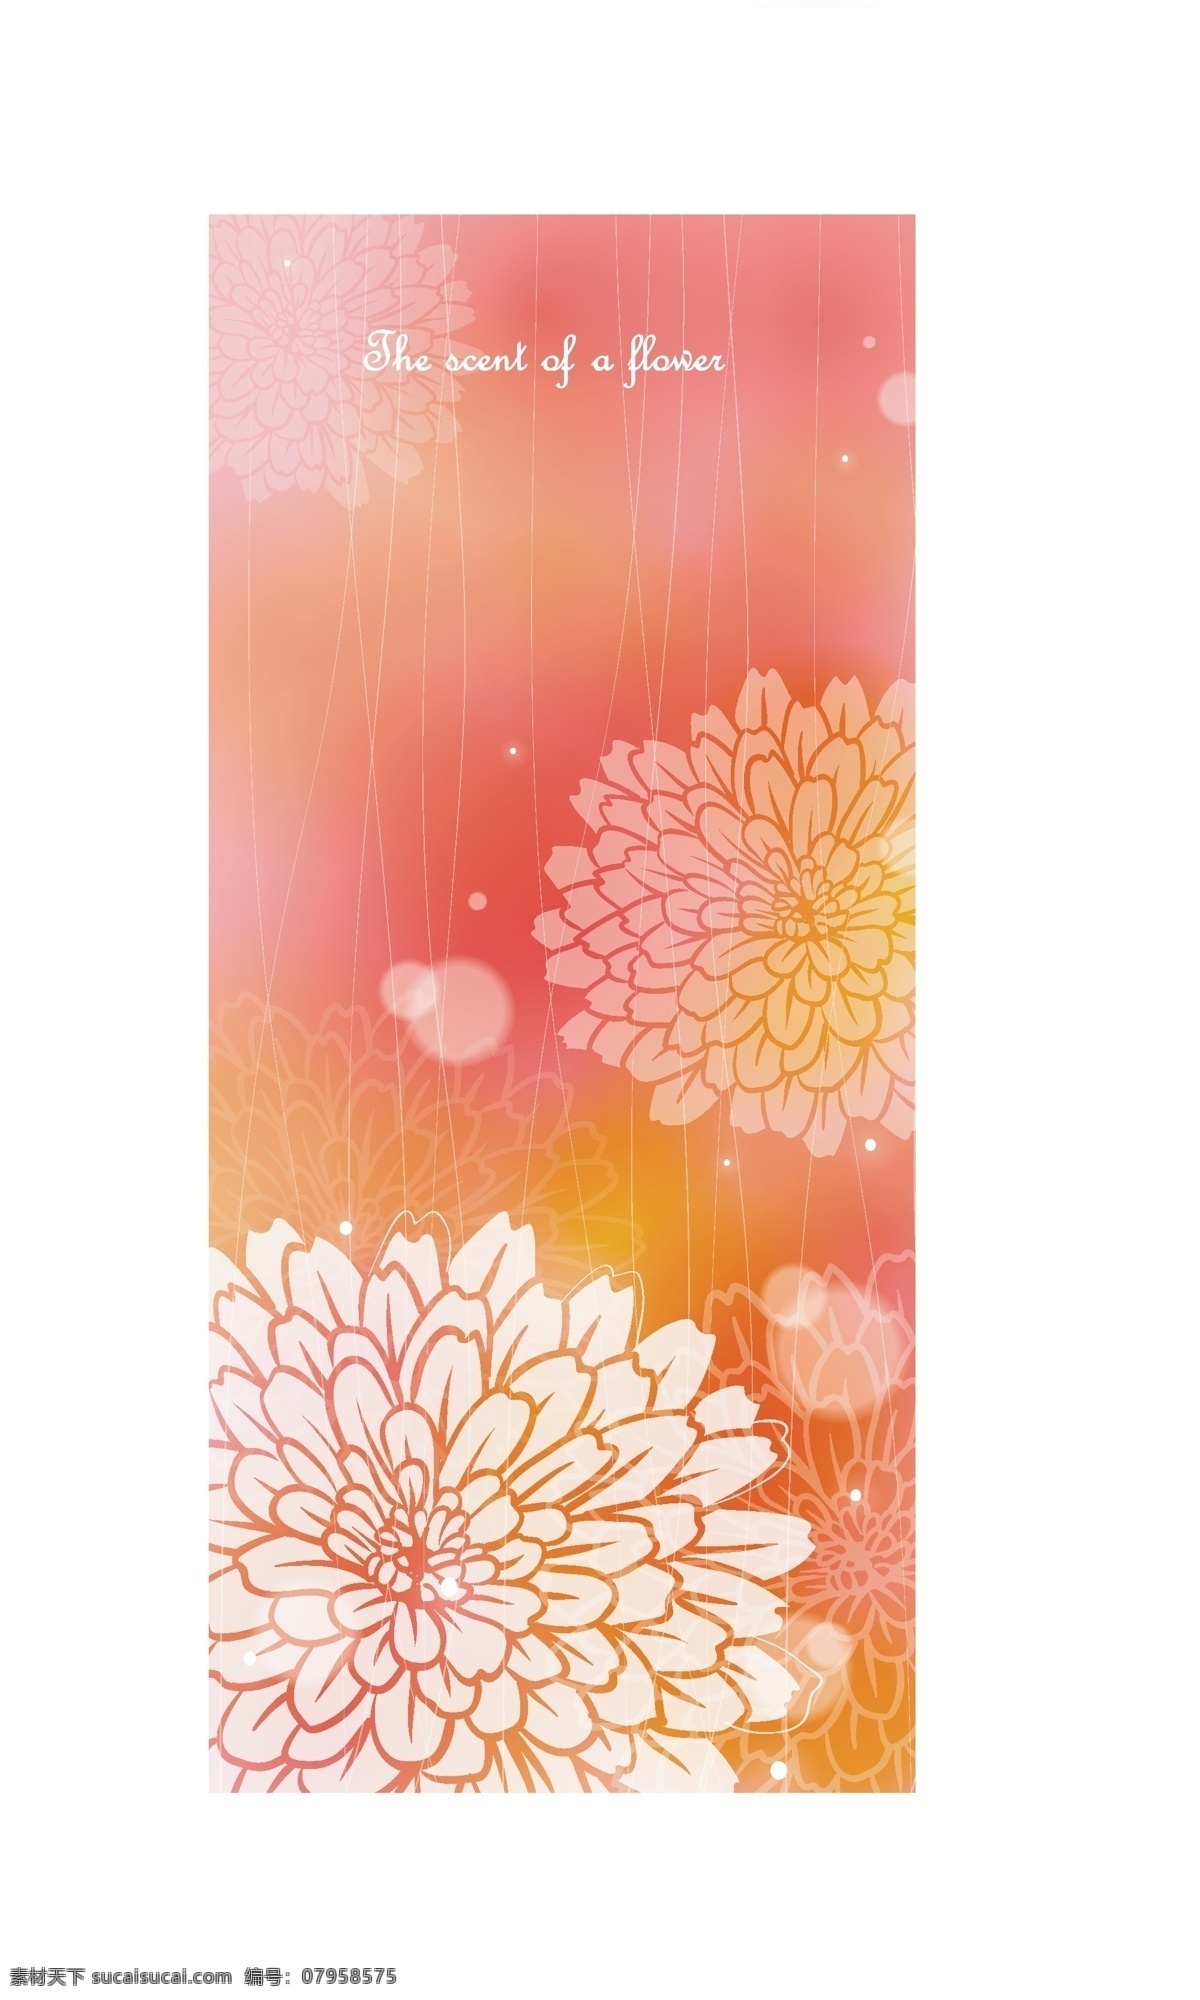 矢量 花卉 图案 精品 创意素材 底纹边框 花边花纹